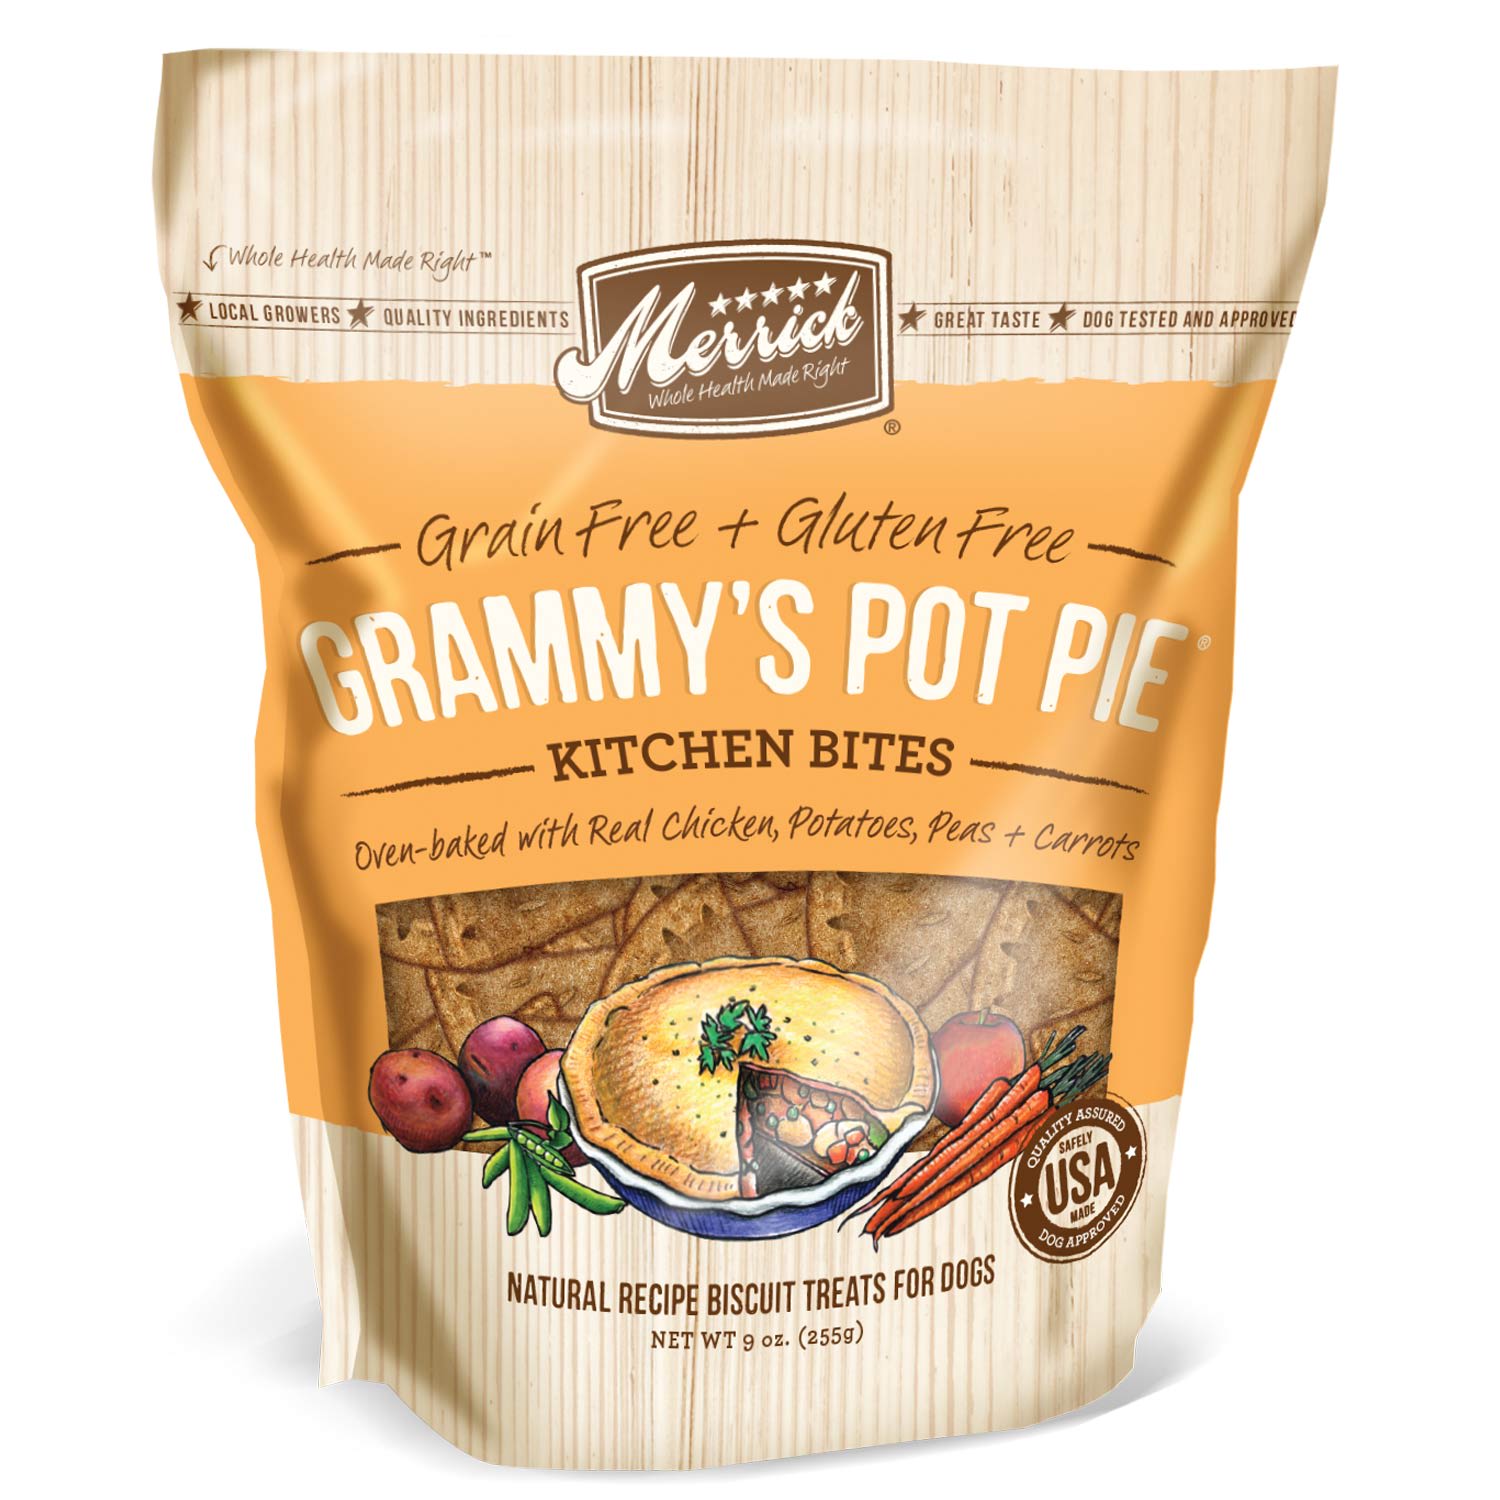 grammy's pot pie dog food